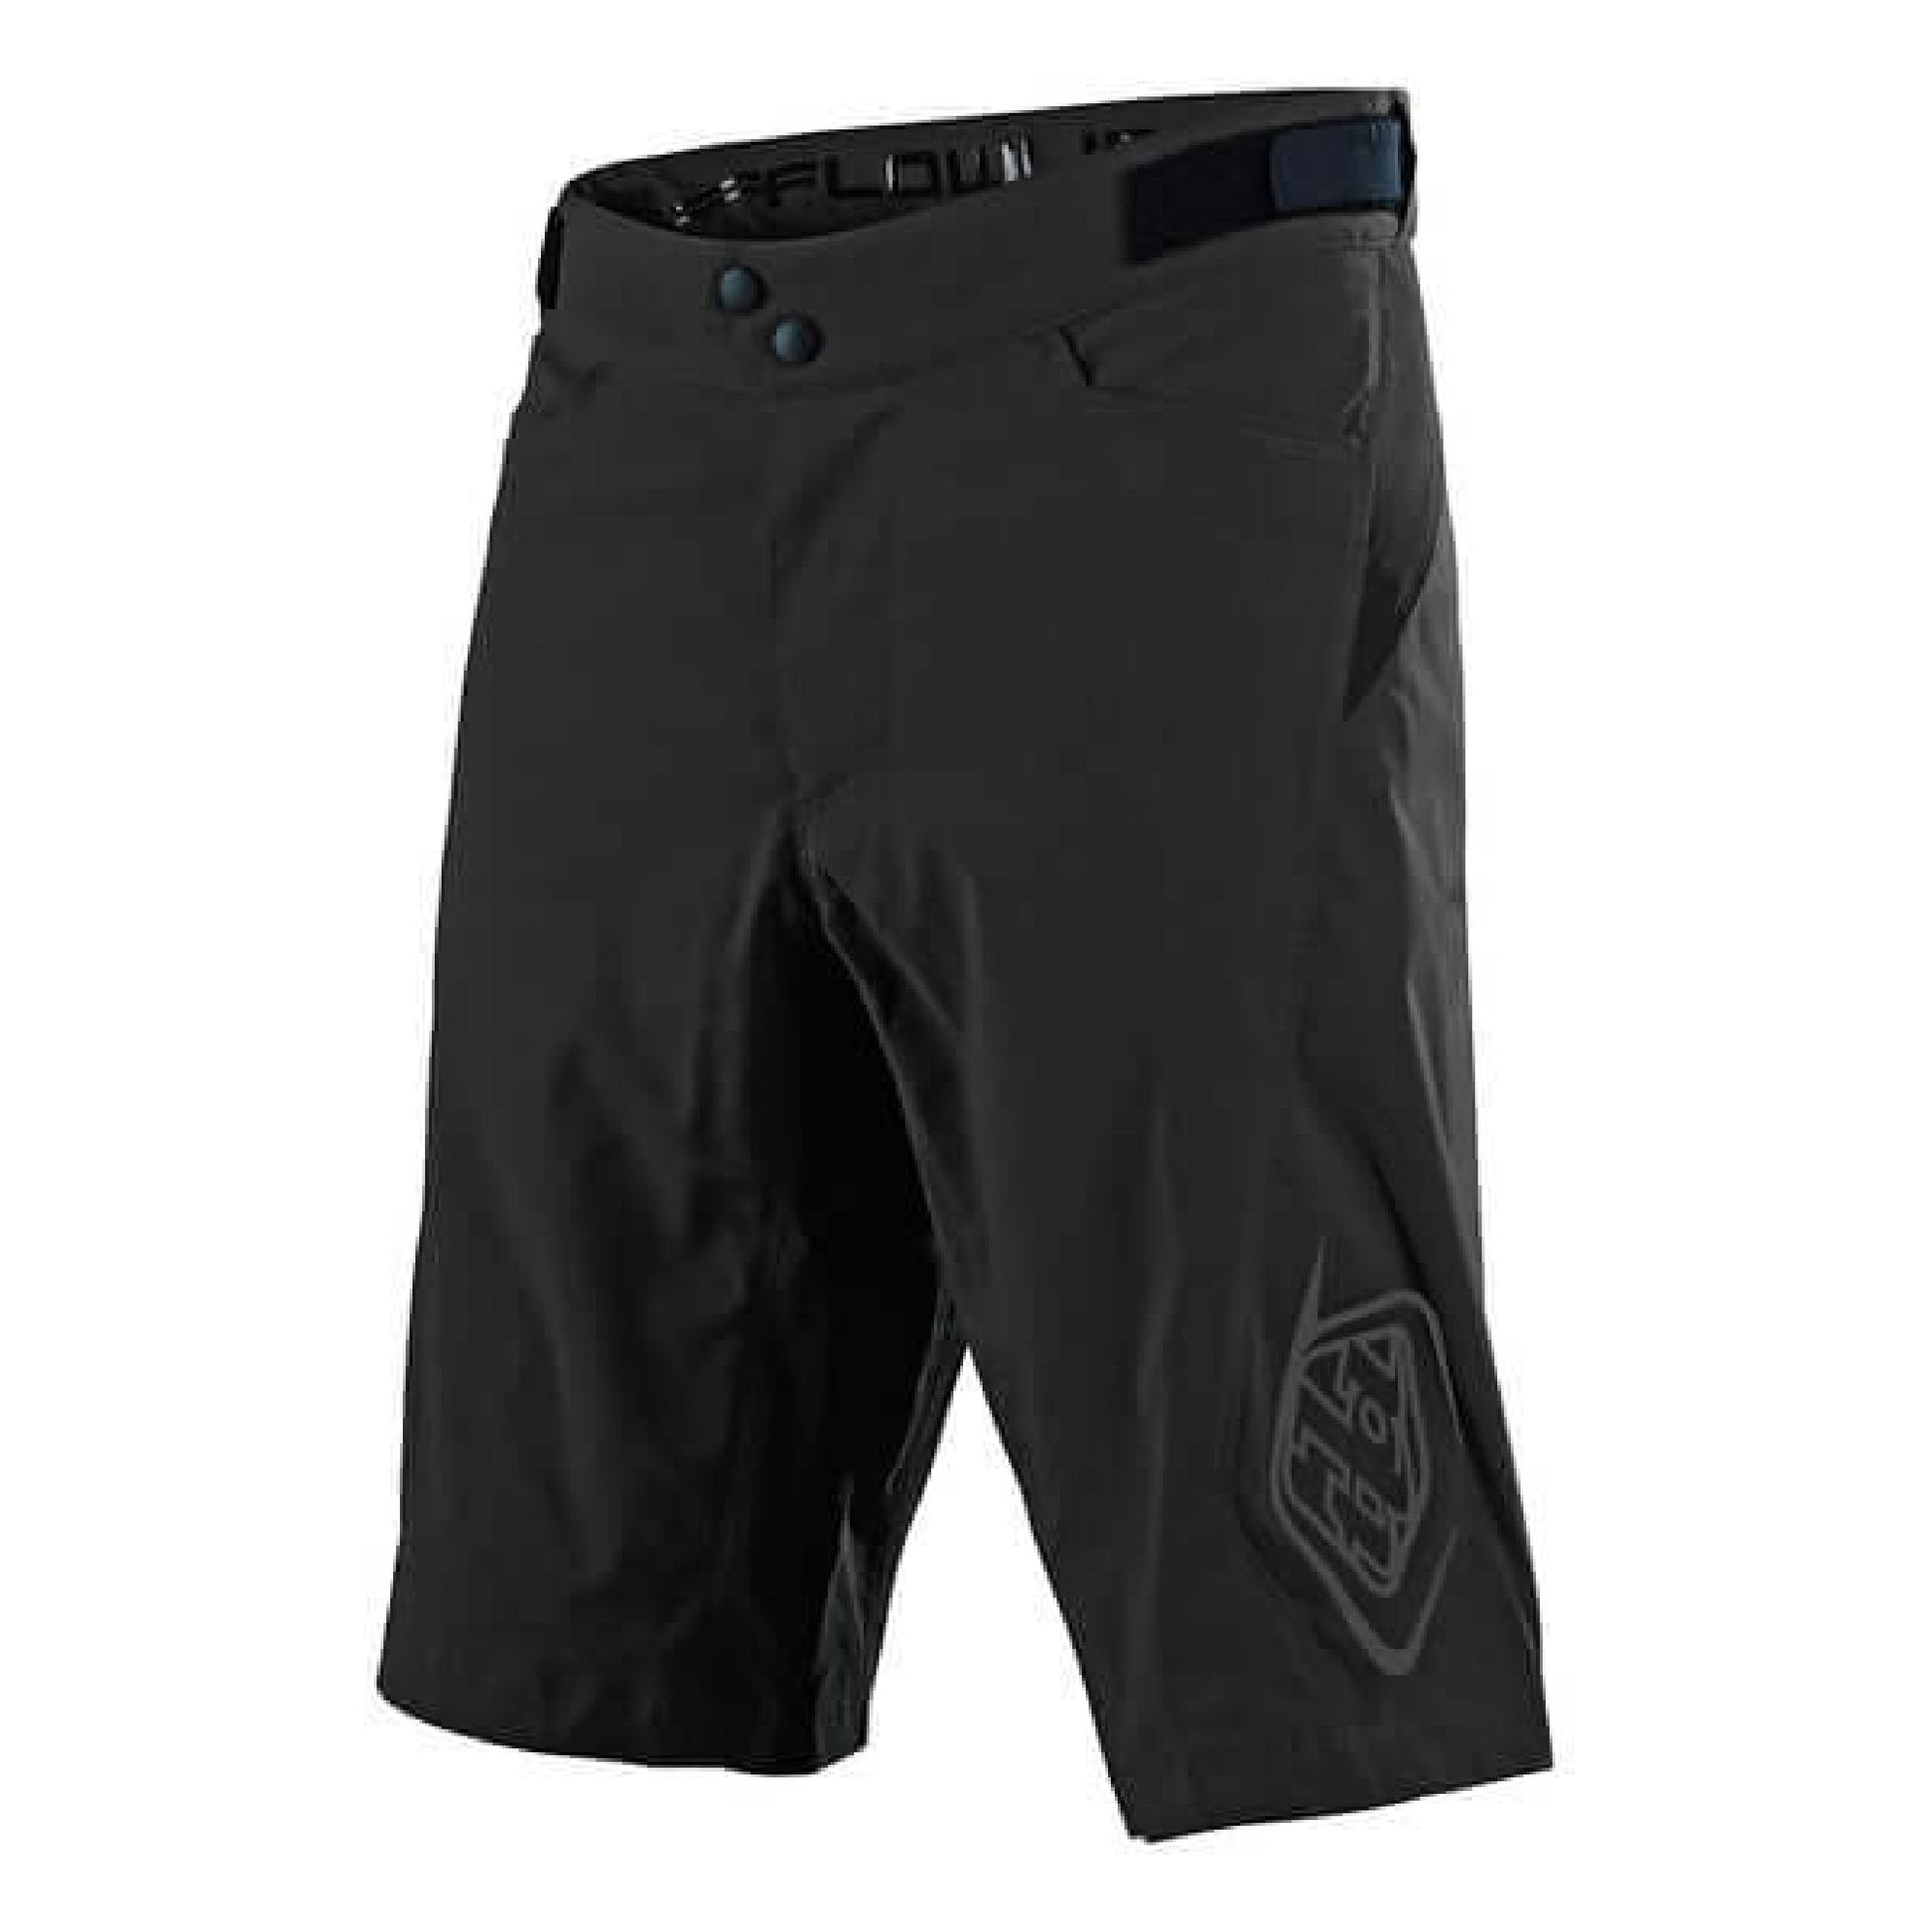 Troy Lee Designs Flowline Short Solid Black Bike Shorts